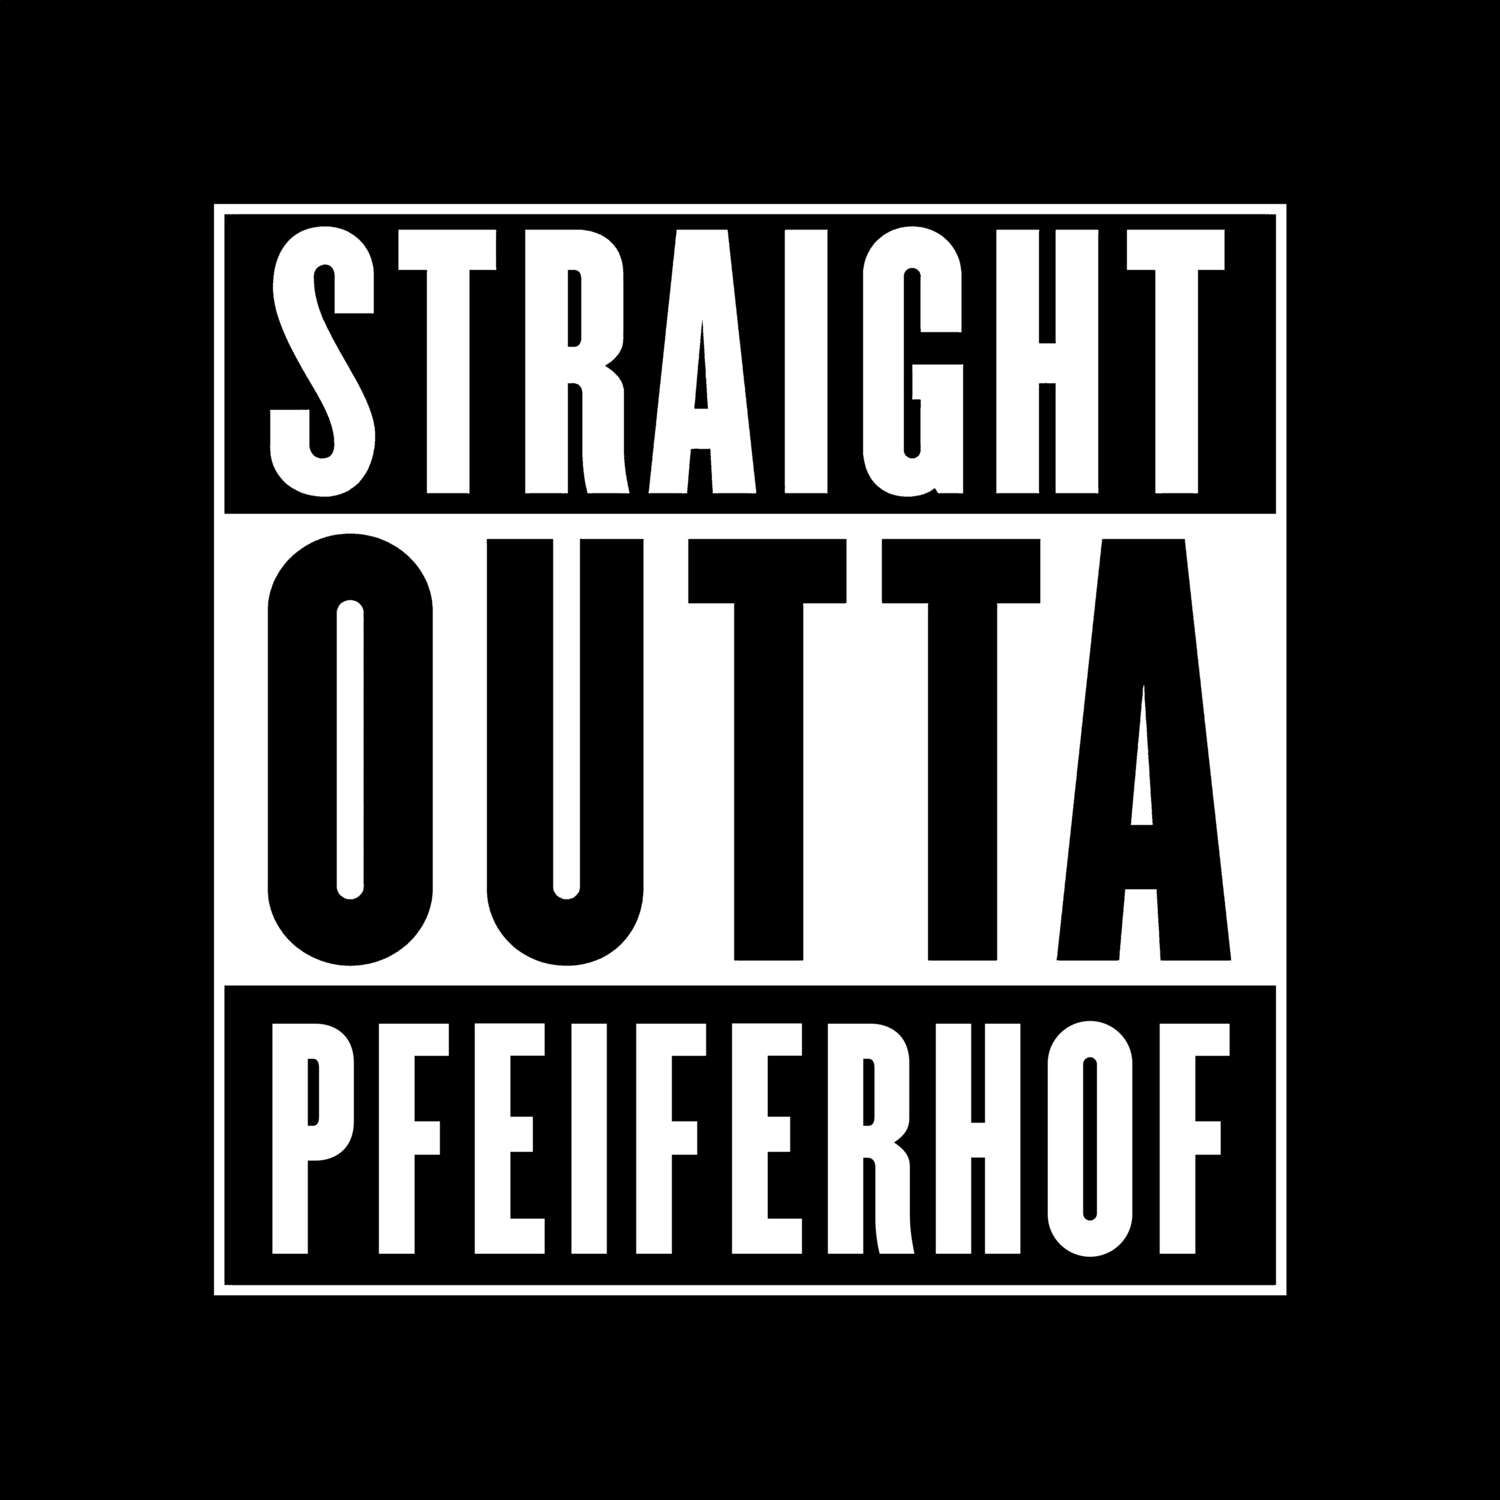 Pfeiferhof T-Shirt »Straight Outta«